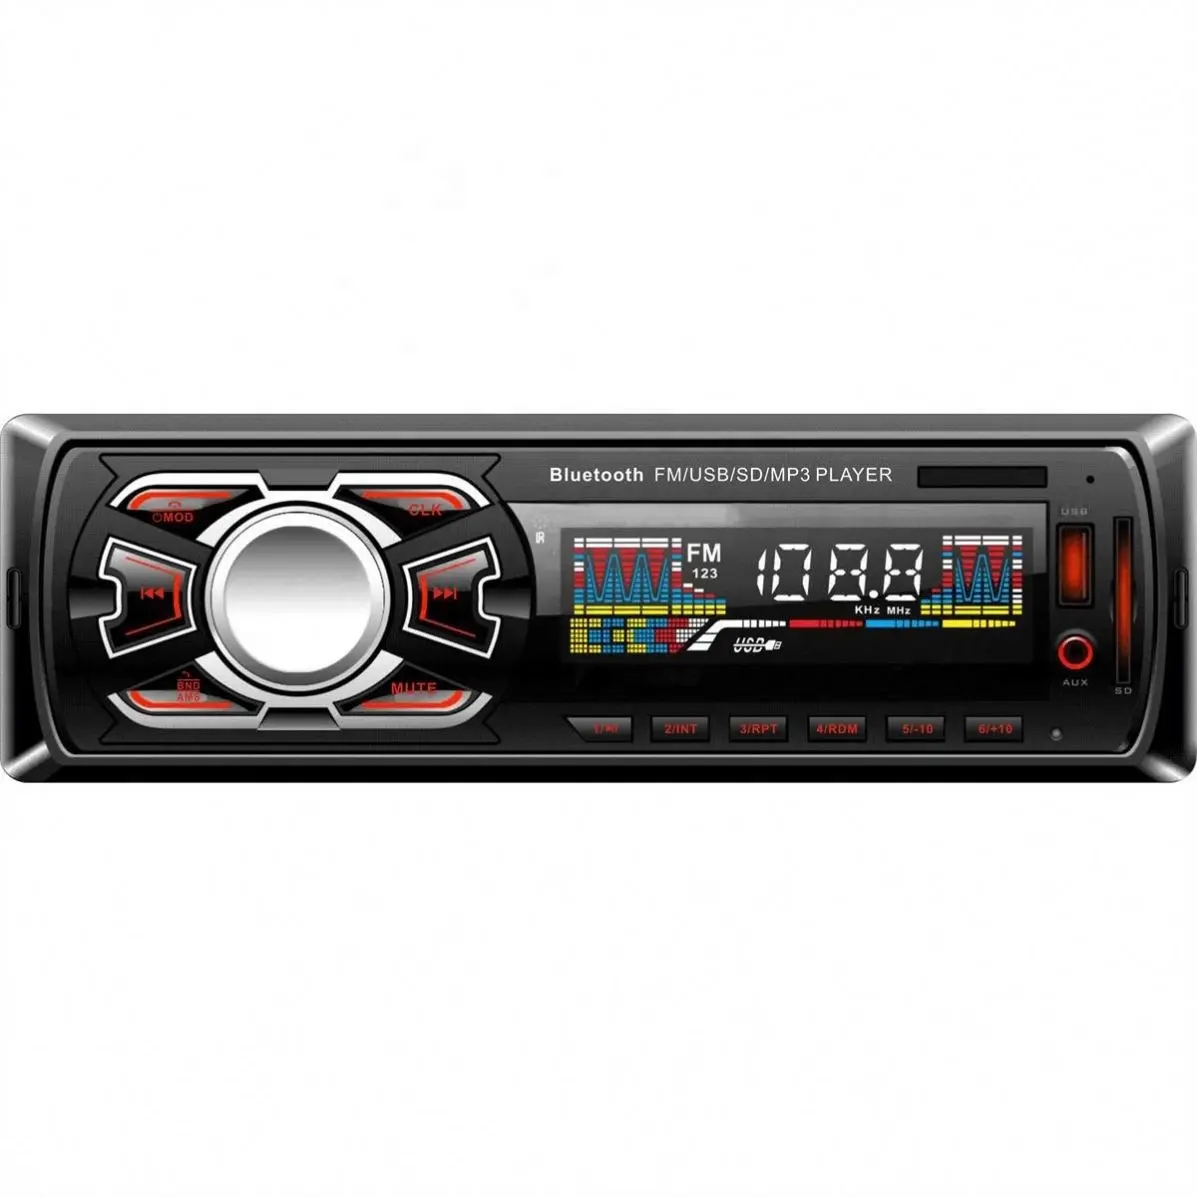 Горячая продажапродуктов автомобиль радио Mp3 плеер с Blueteeth аудио Fm радио короткие и толстые шерстяные радио автомобиль Mp3 плеер для Jsd-520